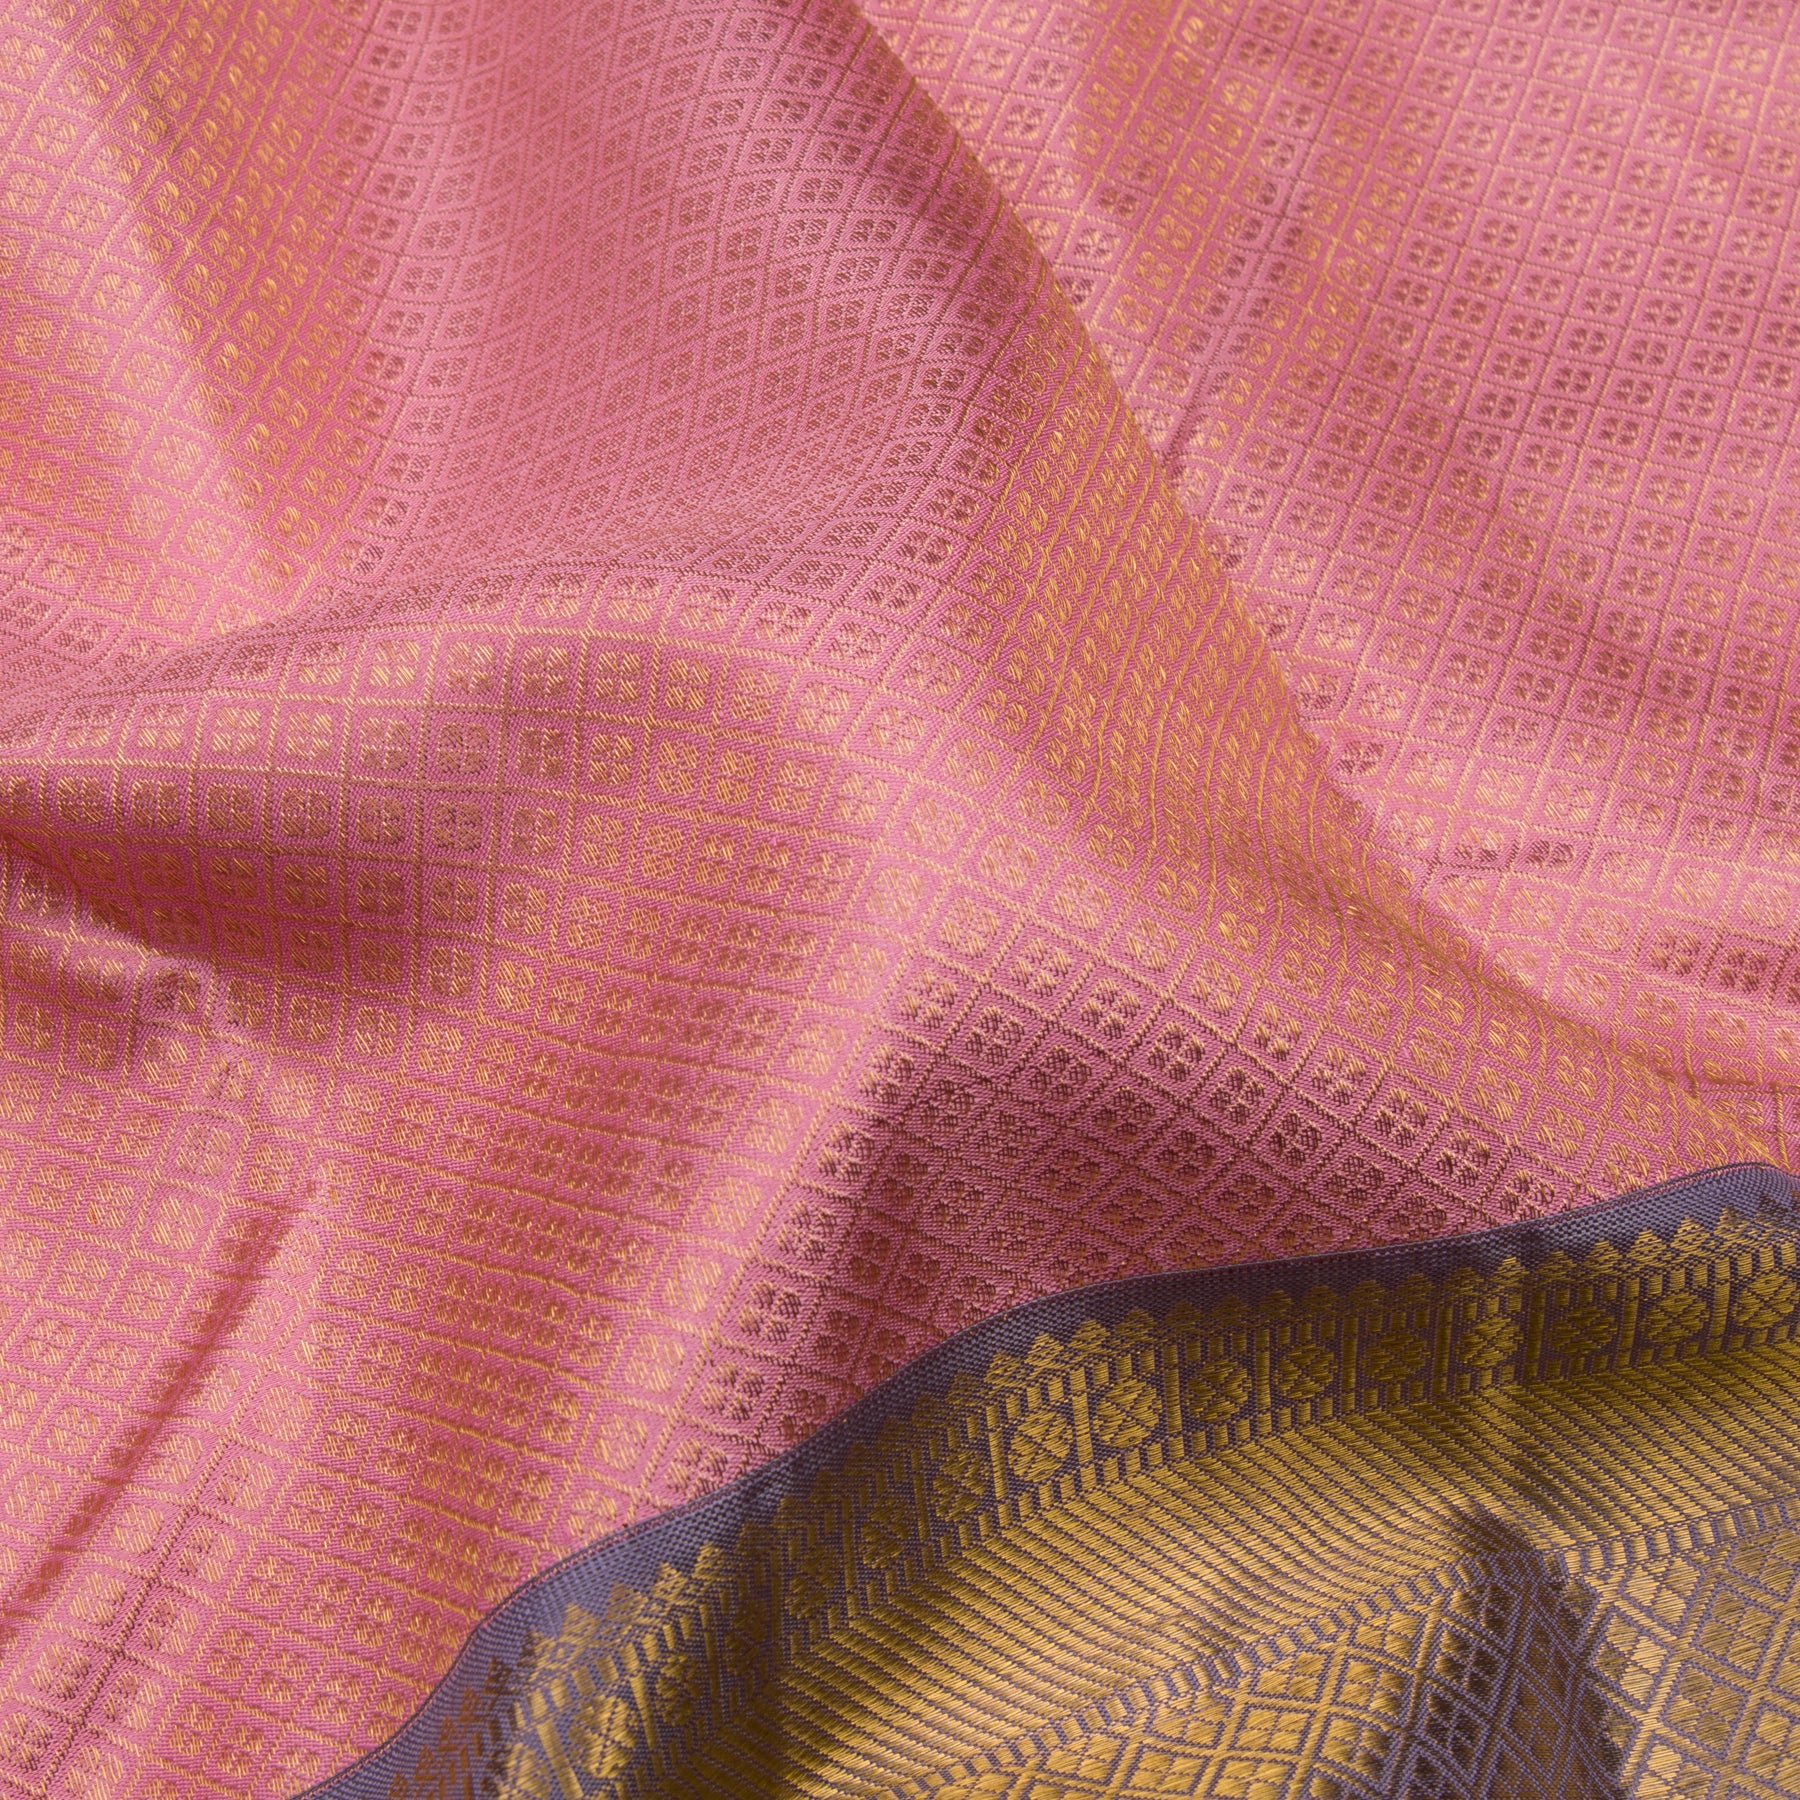 Kanakavalli Kanjivaram Silk Sari 23-110-HS001-00958 - Fabric View